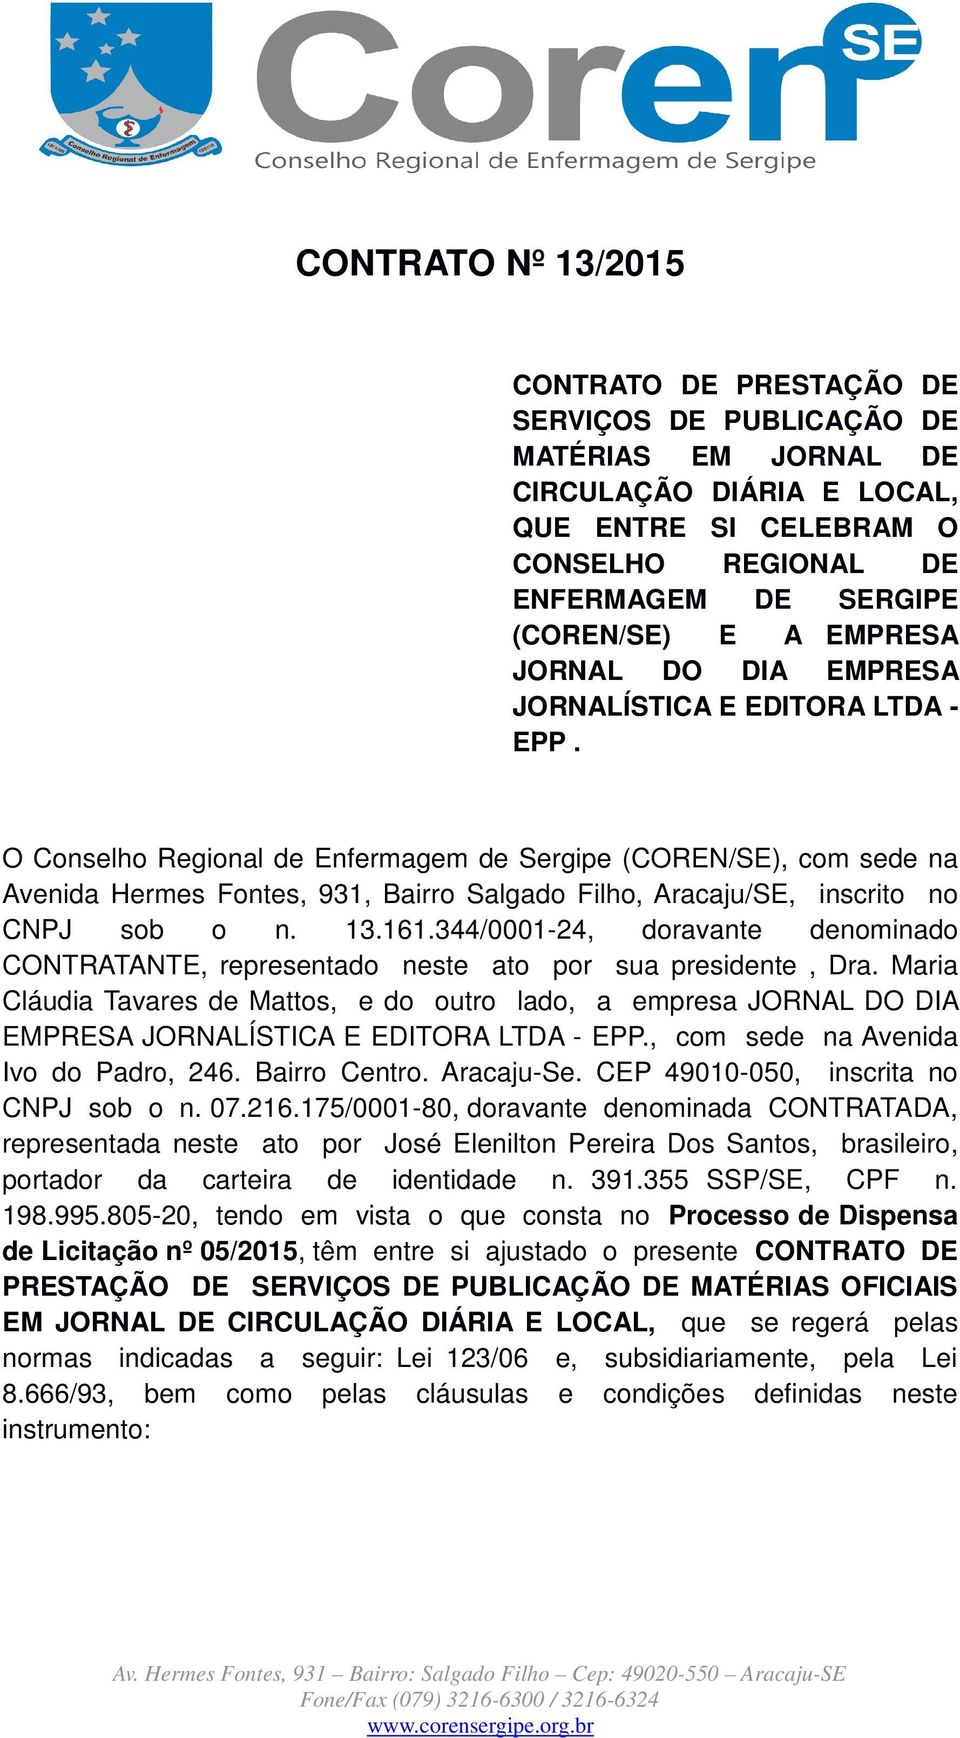 O Conselho Regional de Enfermagem de Sergipe (COREN/SE), com sede na Avenida Hermes Fontes, 931, Bairro Salgado Filho, Aracaju/SE, inscrito no CNPJ sob o n. 13.161.